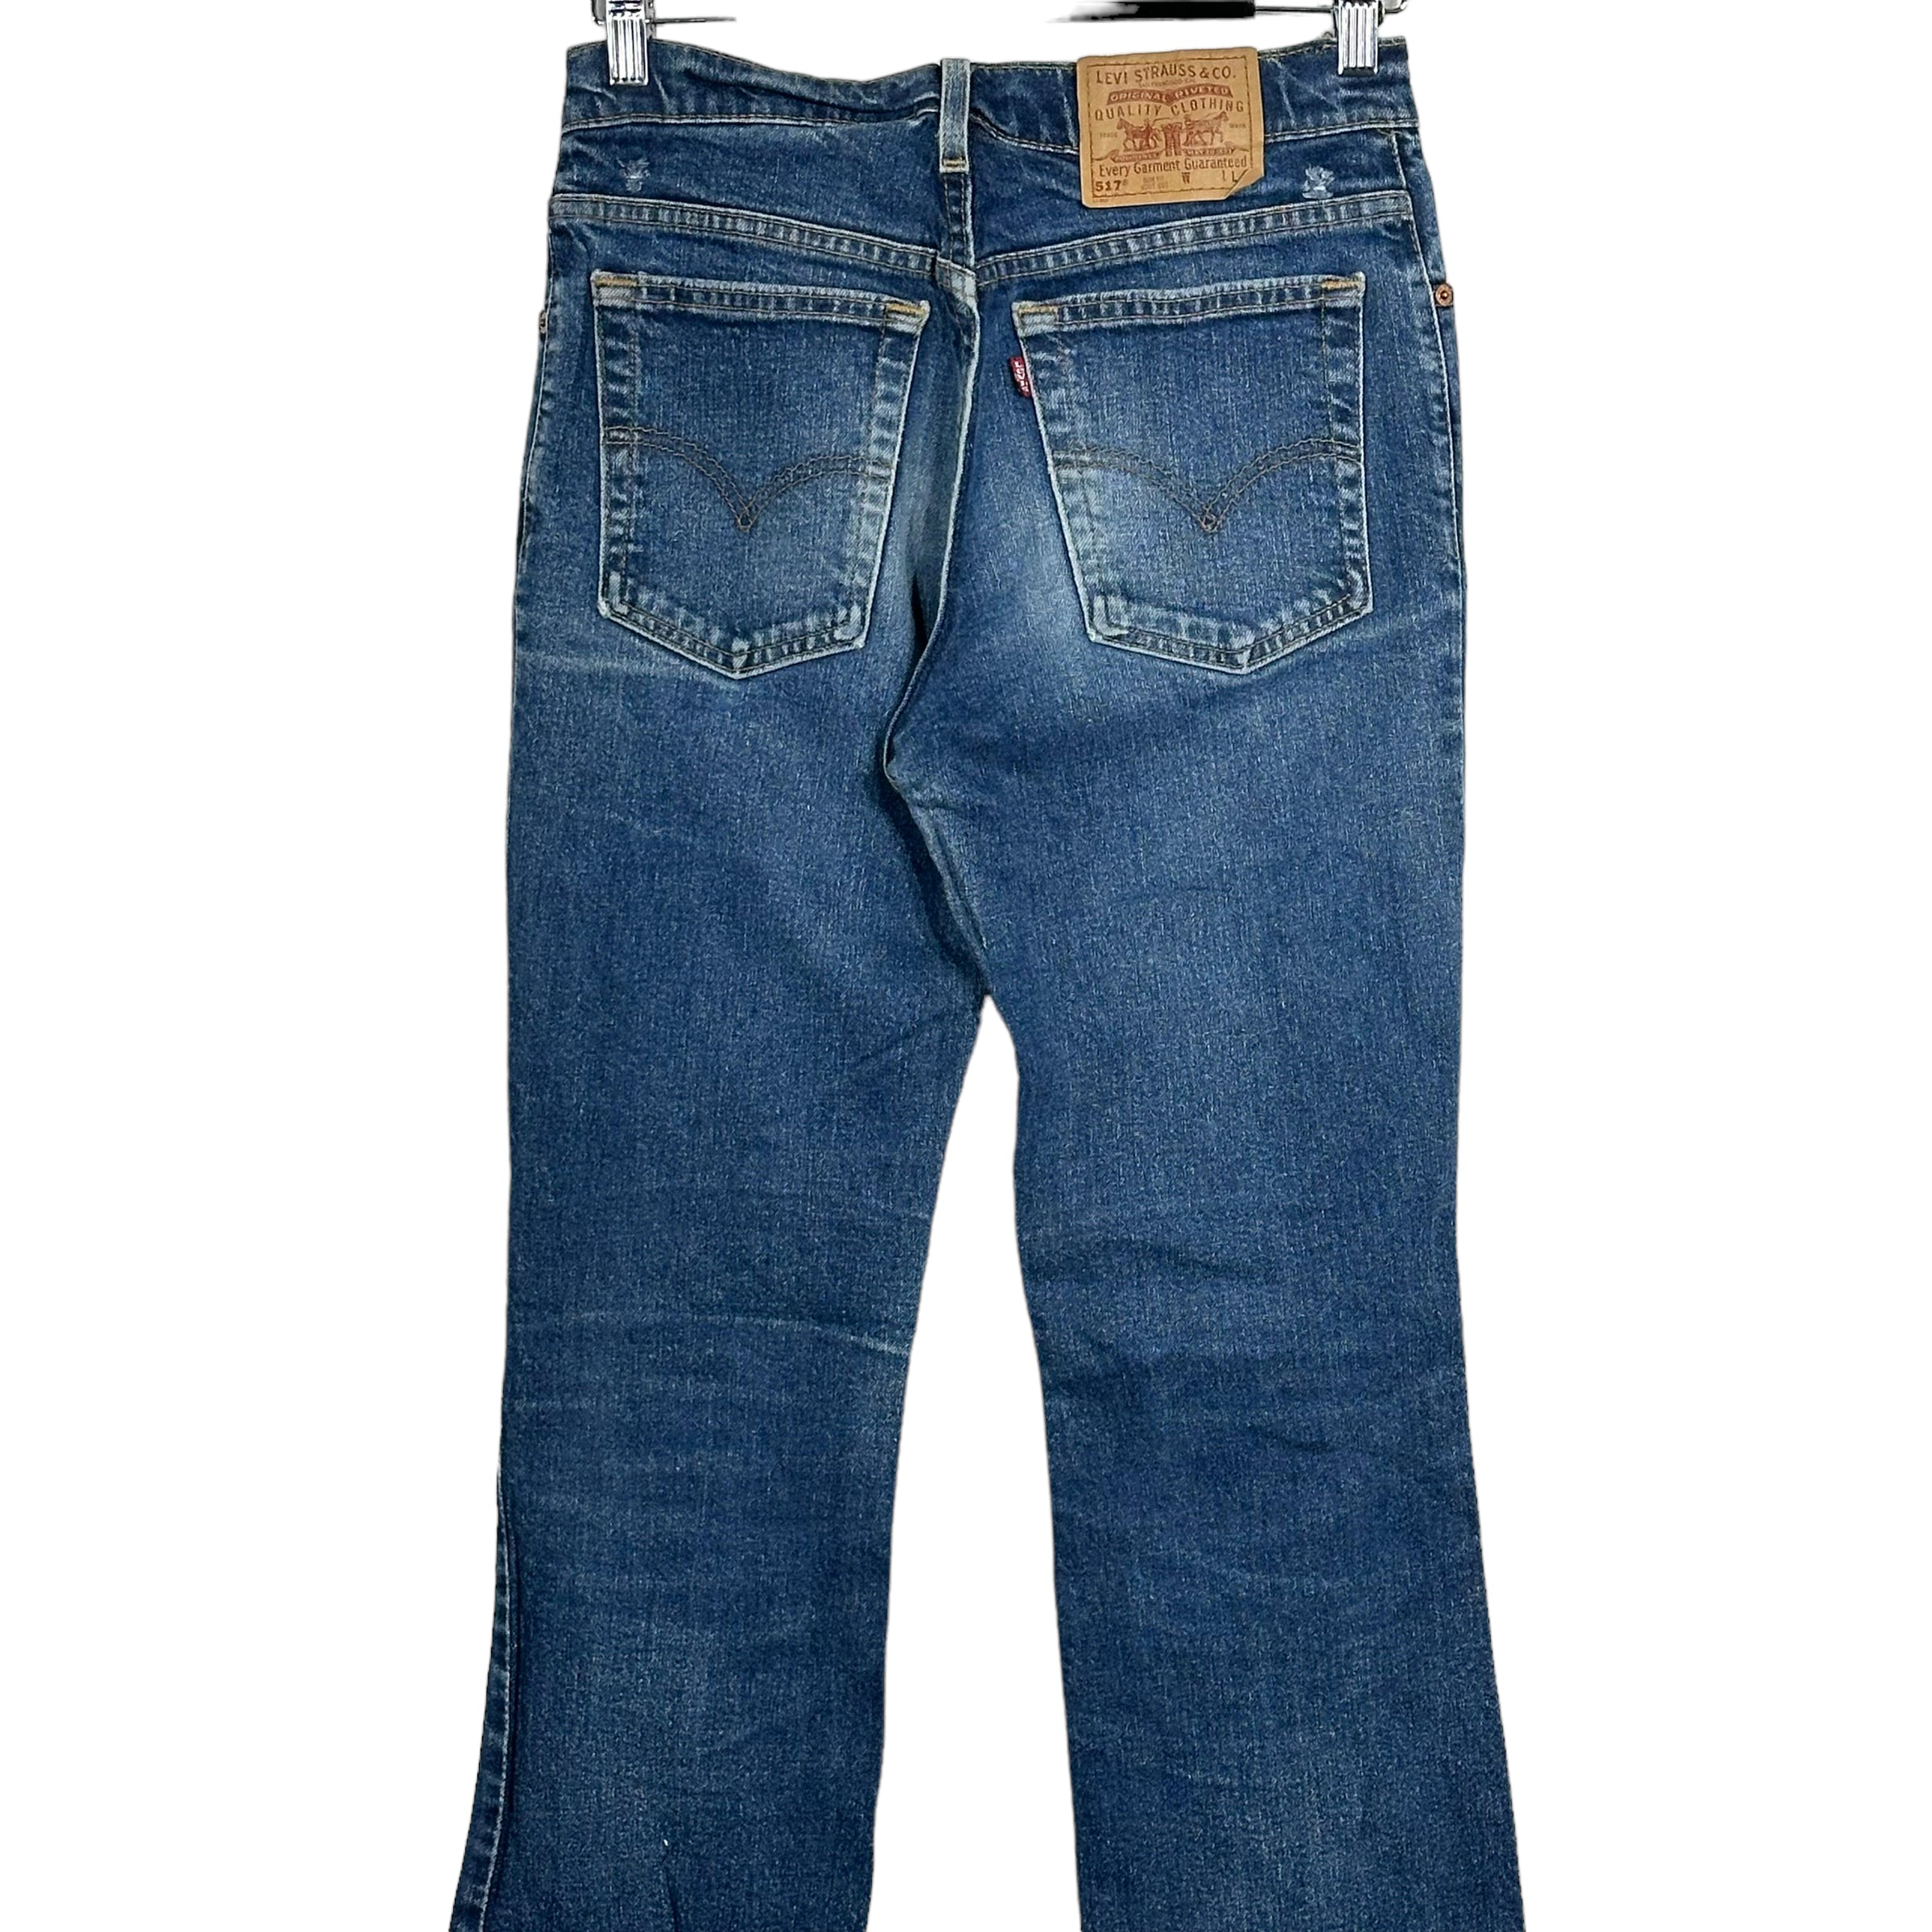 Vintage Levis 517 Slim Fit Boot Cut Jeans